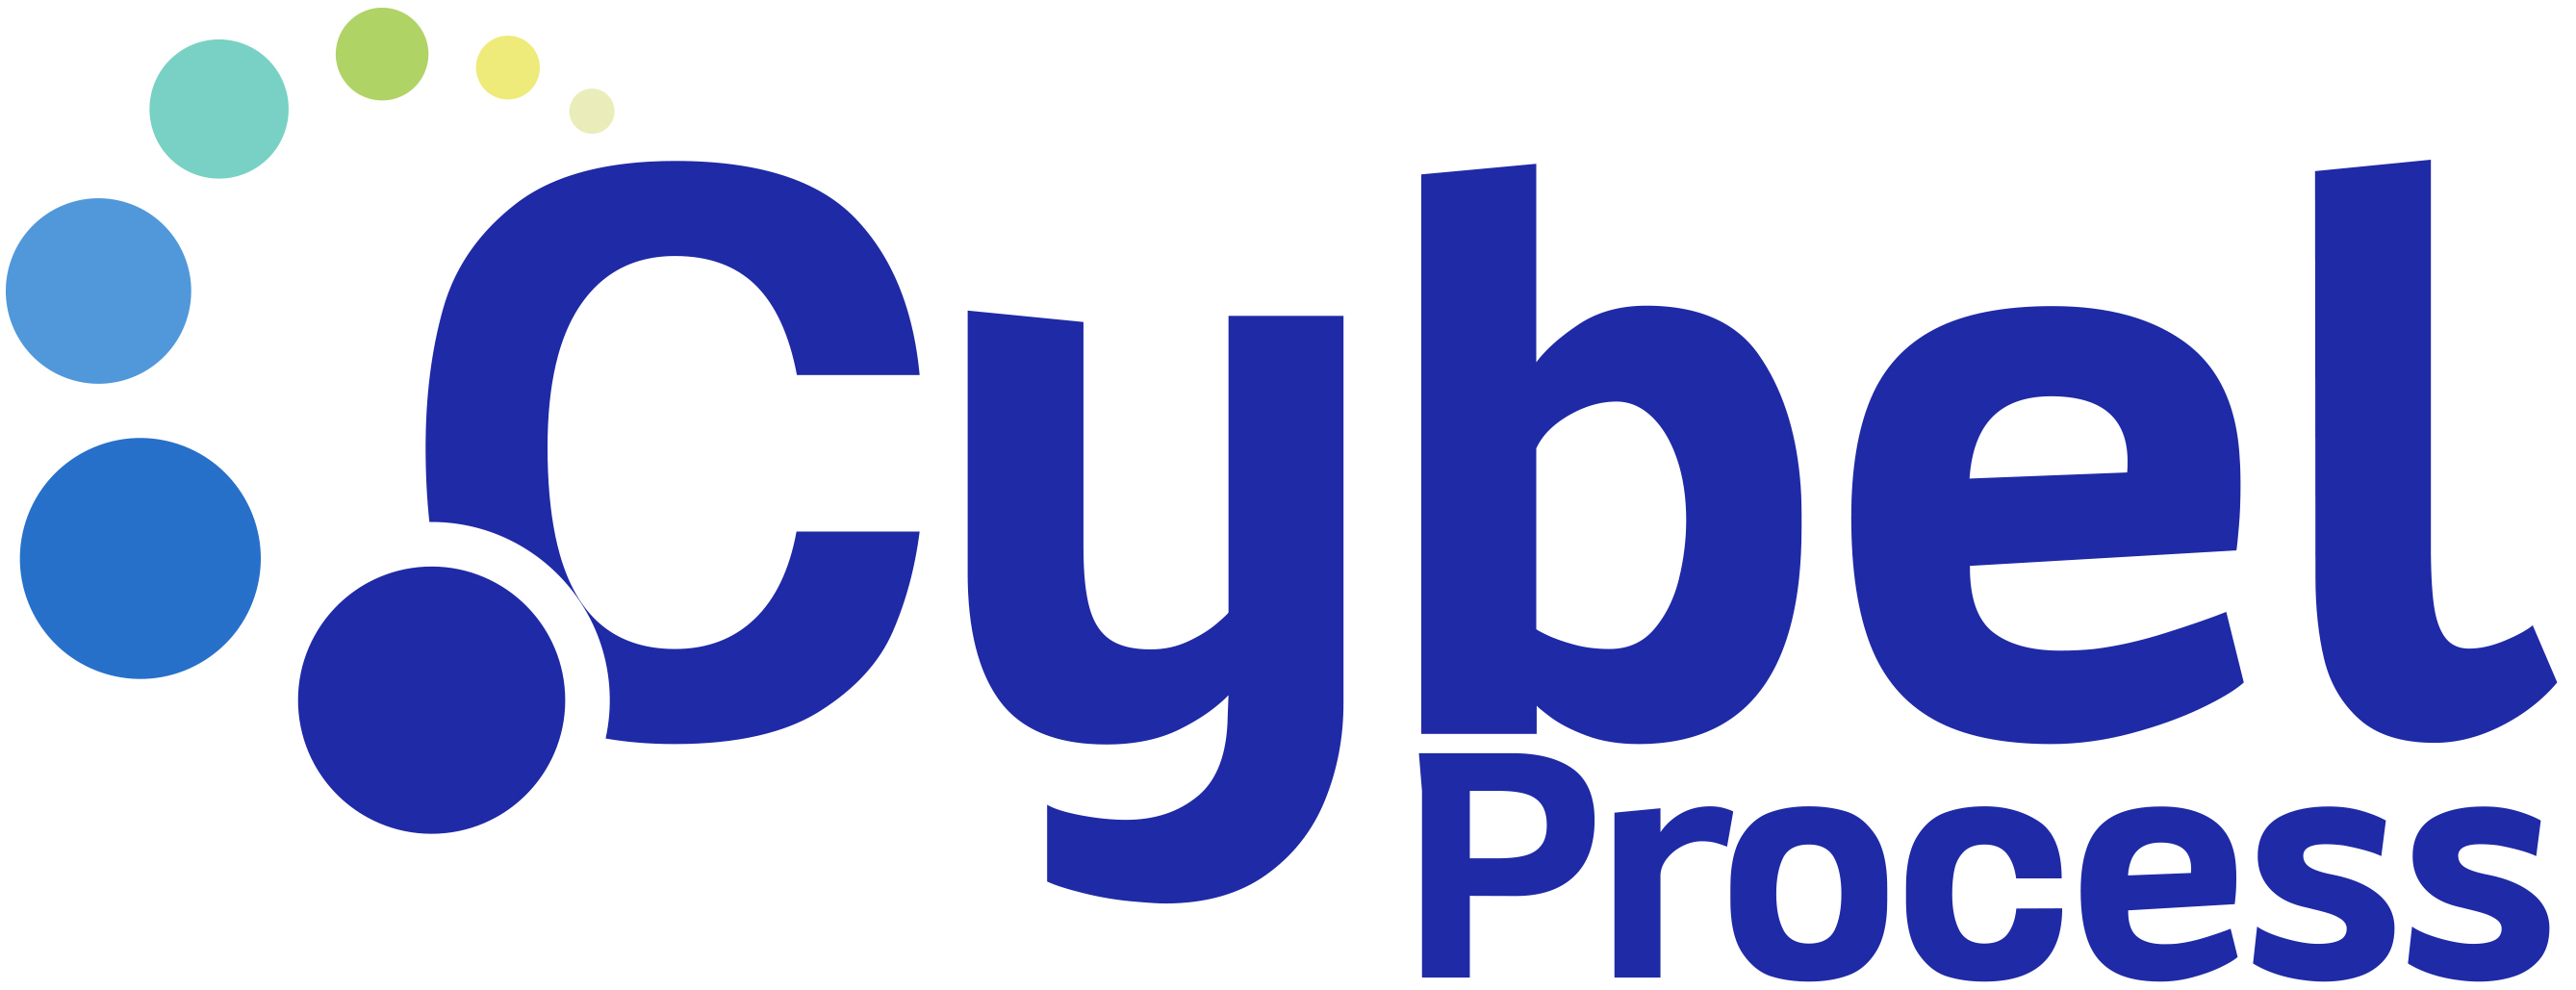 Logo de l'exposant : CYBEL PROCESS